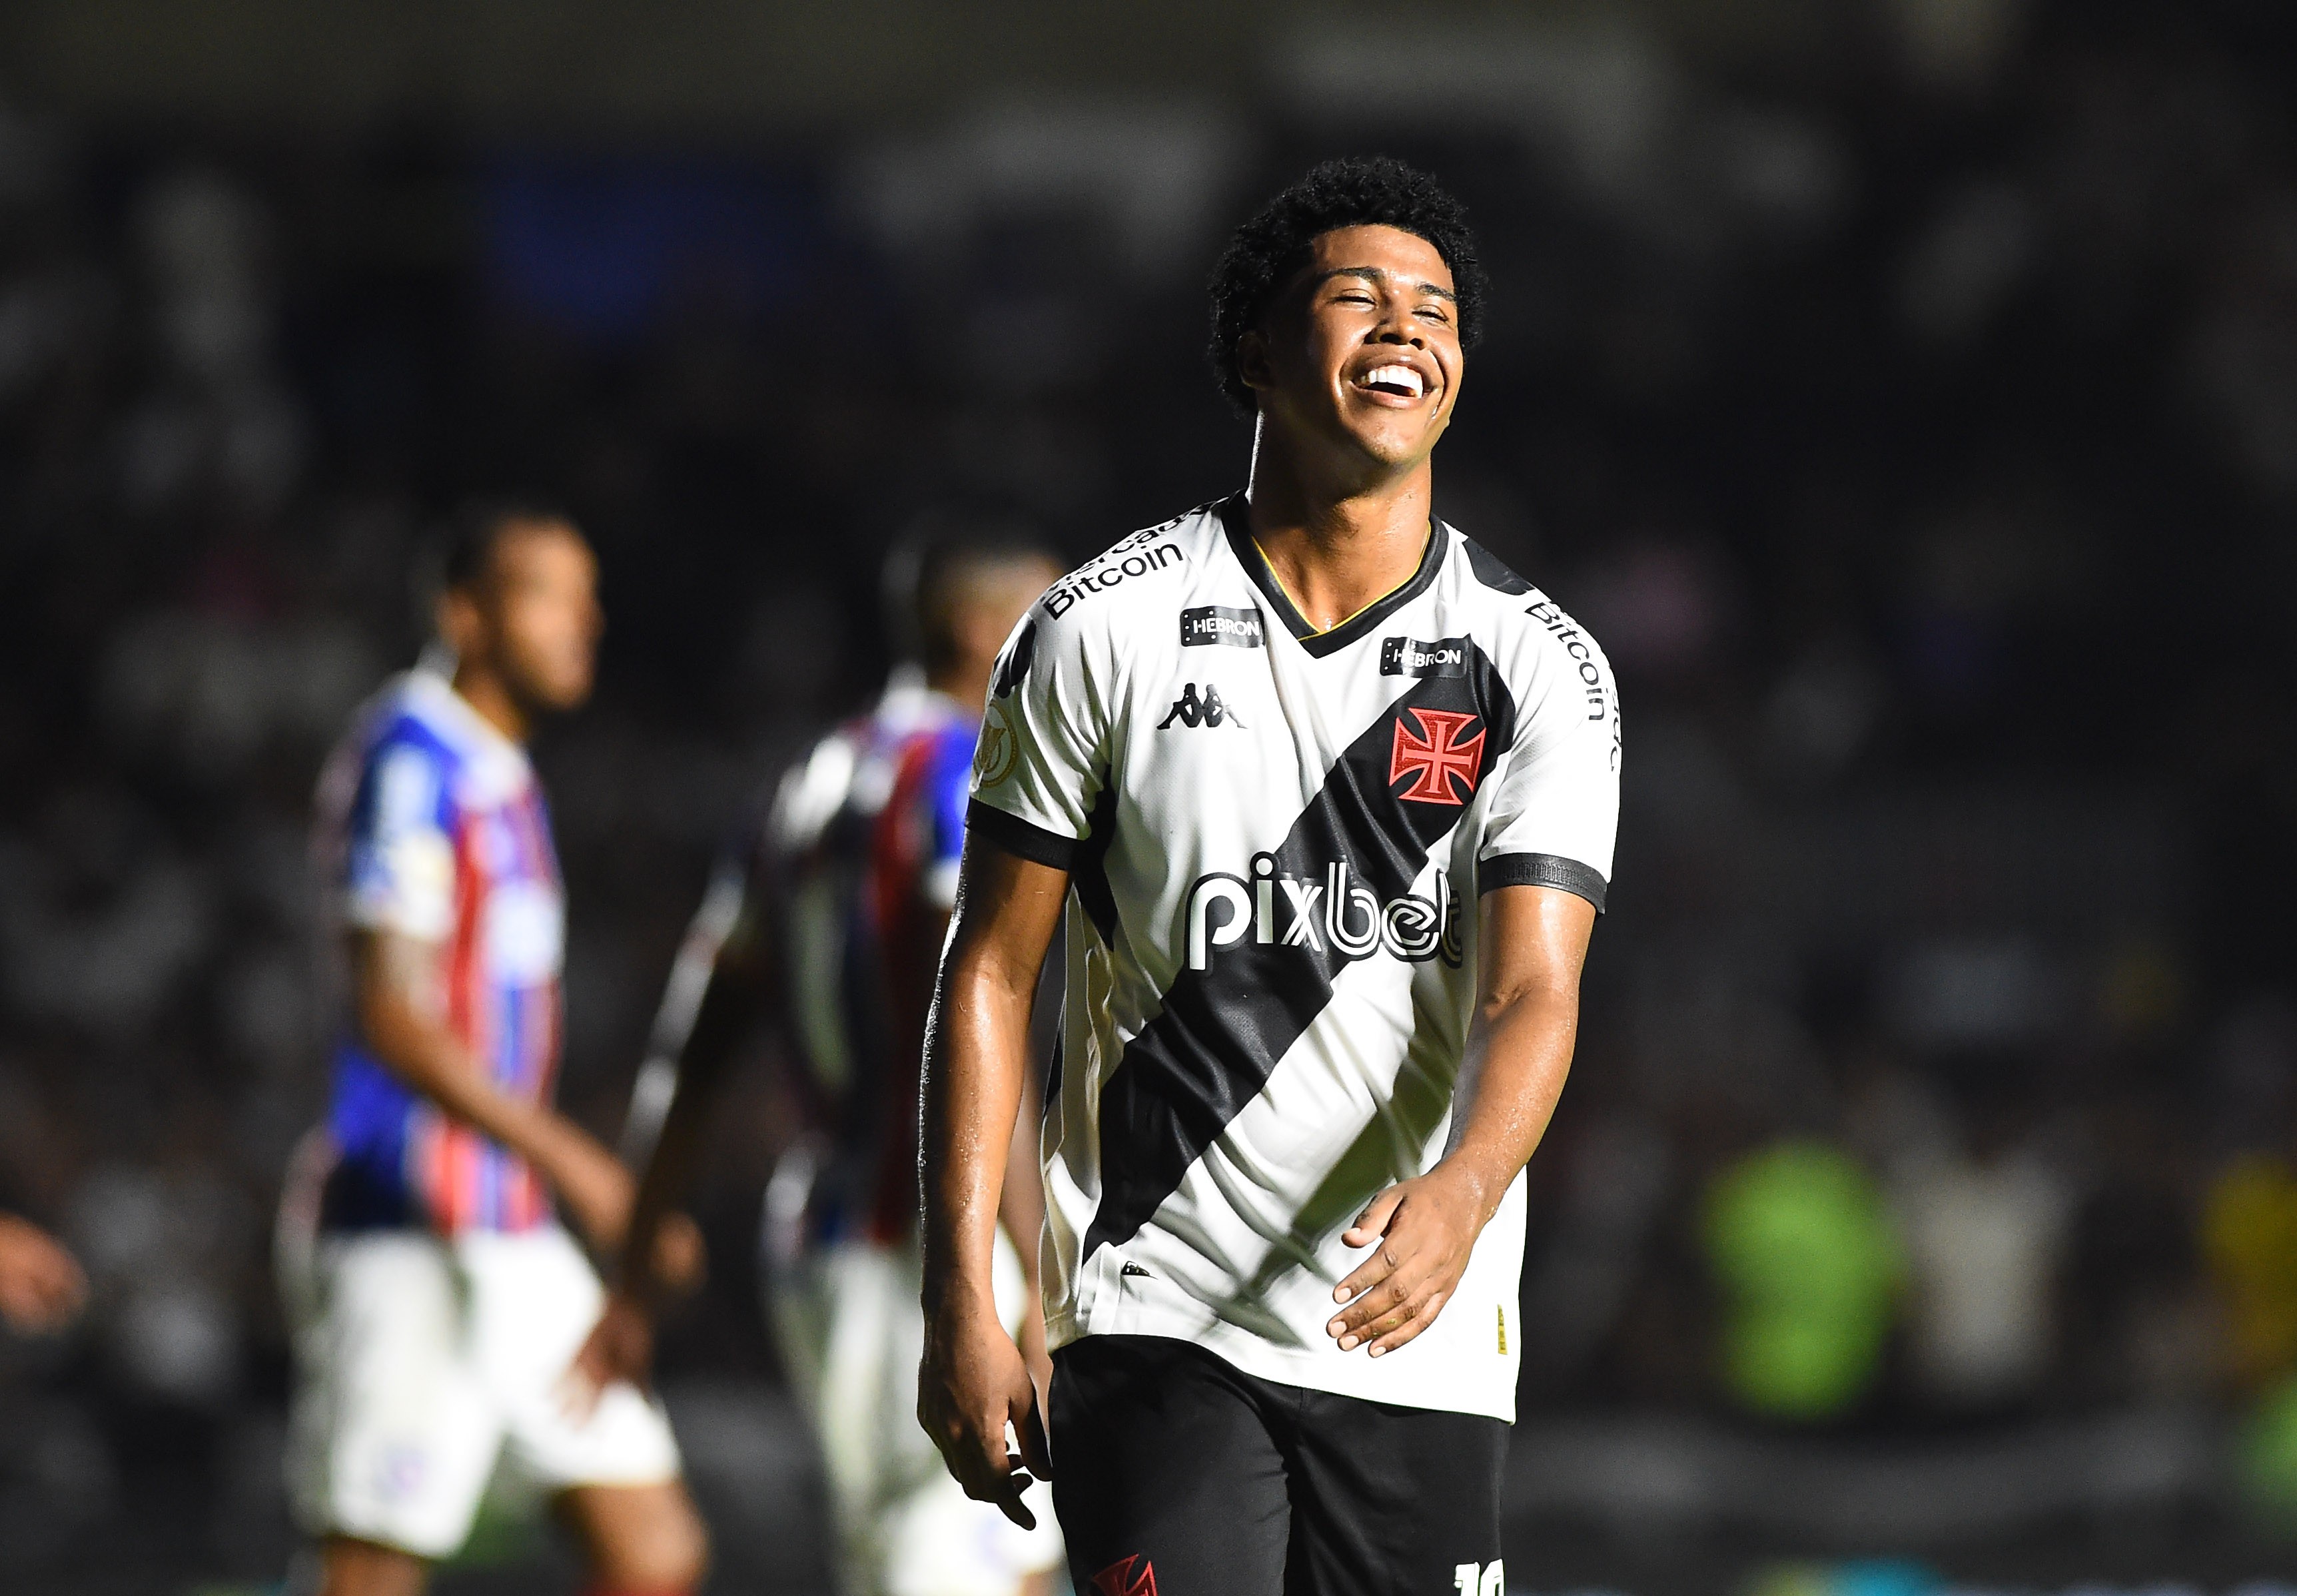 Flamengo usará camisa escrito: Todos com Vini Jr. em jogo contra o  Cruzeiro - Jogo24